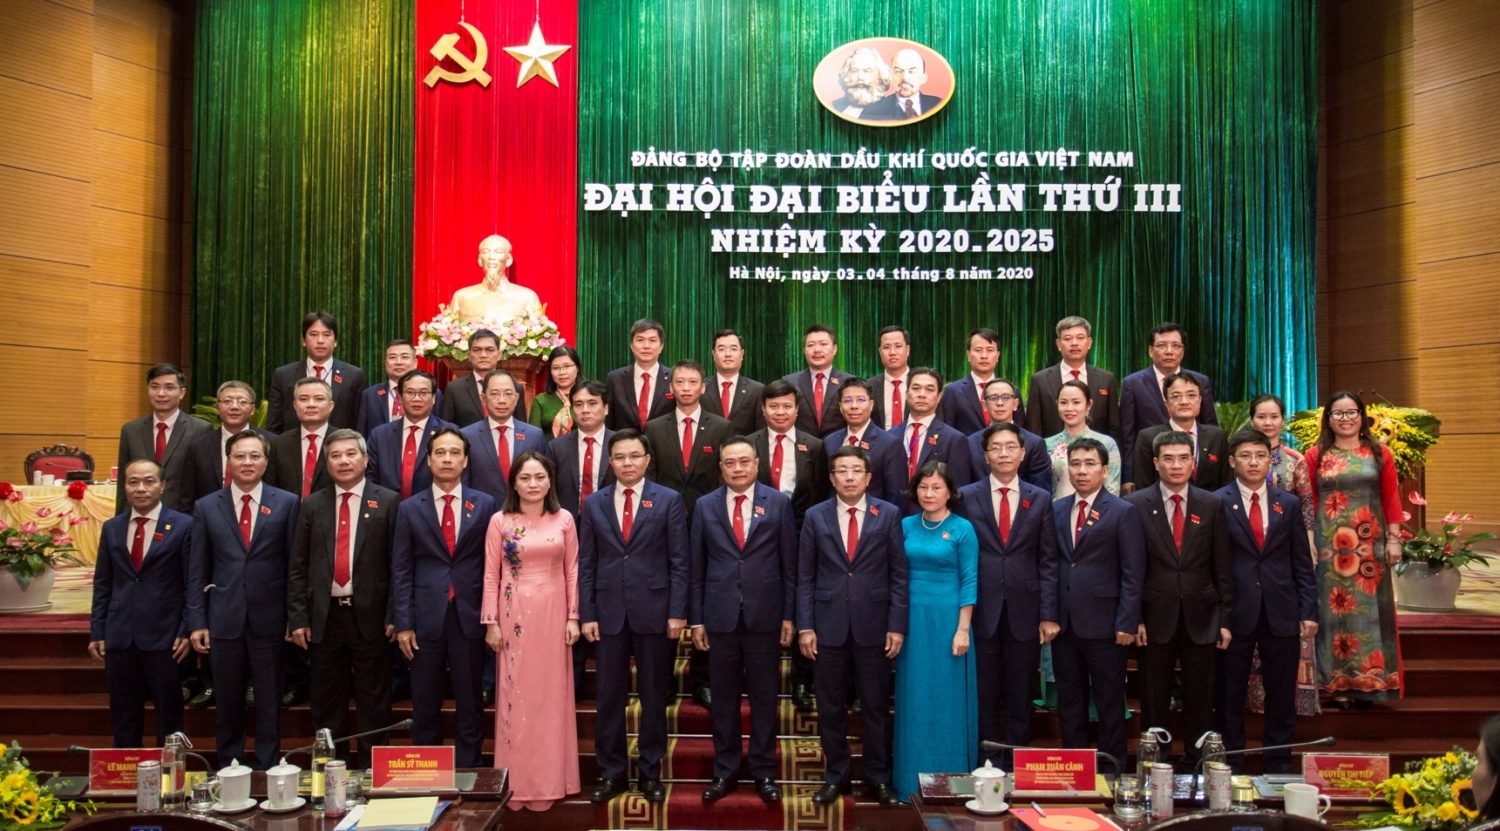 Ban Chấp hành Đảng bộ Tập đoàn Dầu khí Quốc gia Việt Nam Khóa III, nhiệm kỳ 2020 – 2025 ra mắt Đại hội